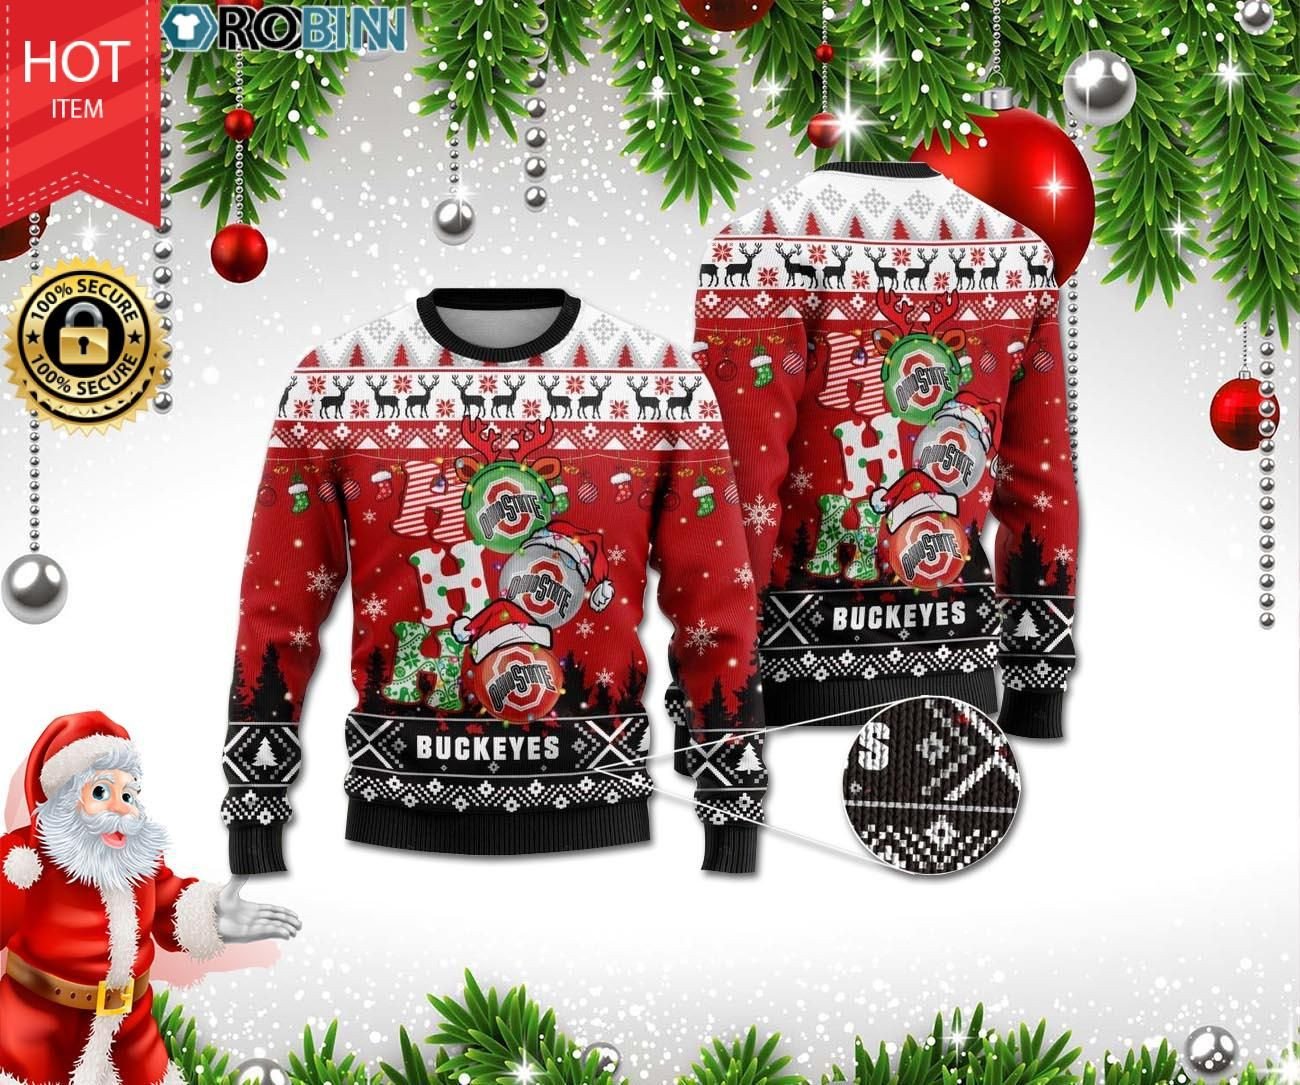 Ohio State Buckeyes Ho Ho Ho 3D Ugly Christmas Sweater